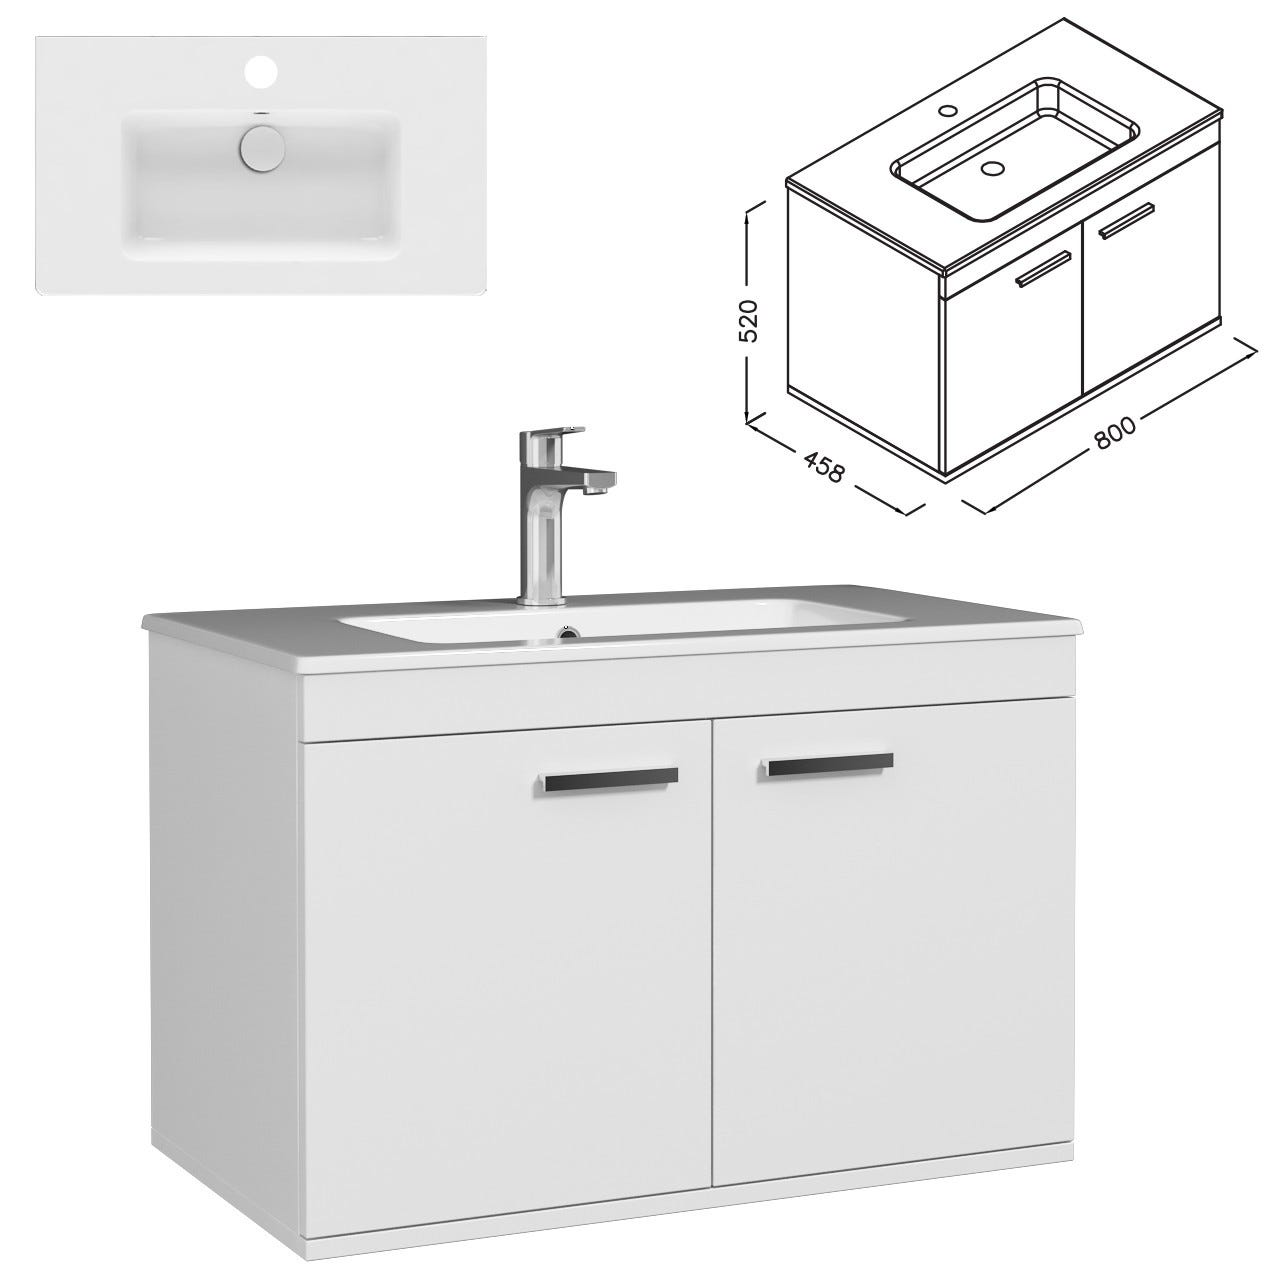 RUBITE Meuble salle de bain simple vasque 2 portes blanc largeur 80 cm 2